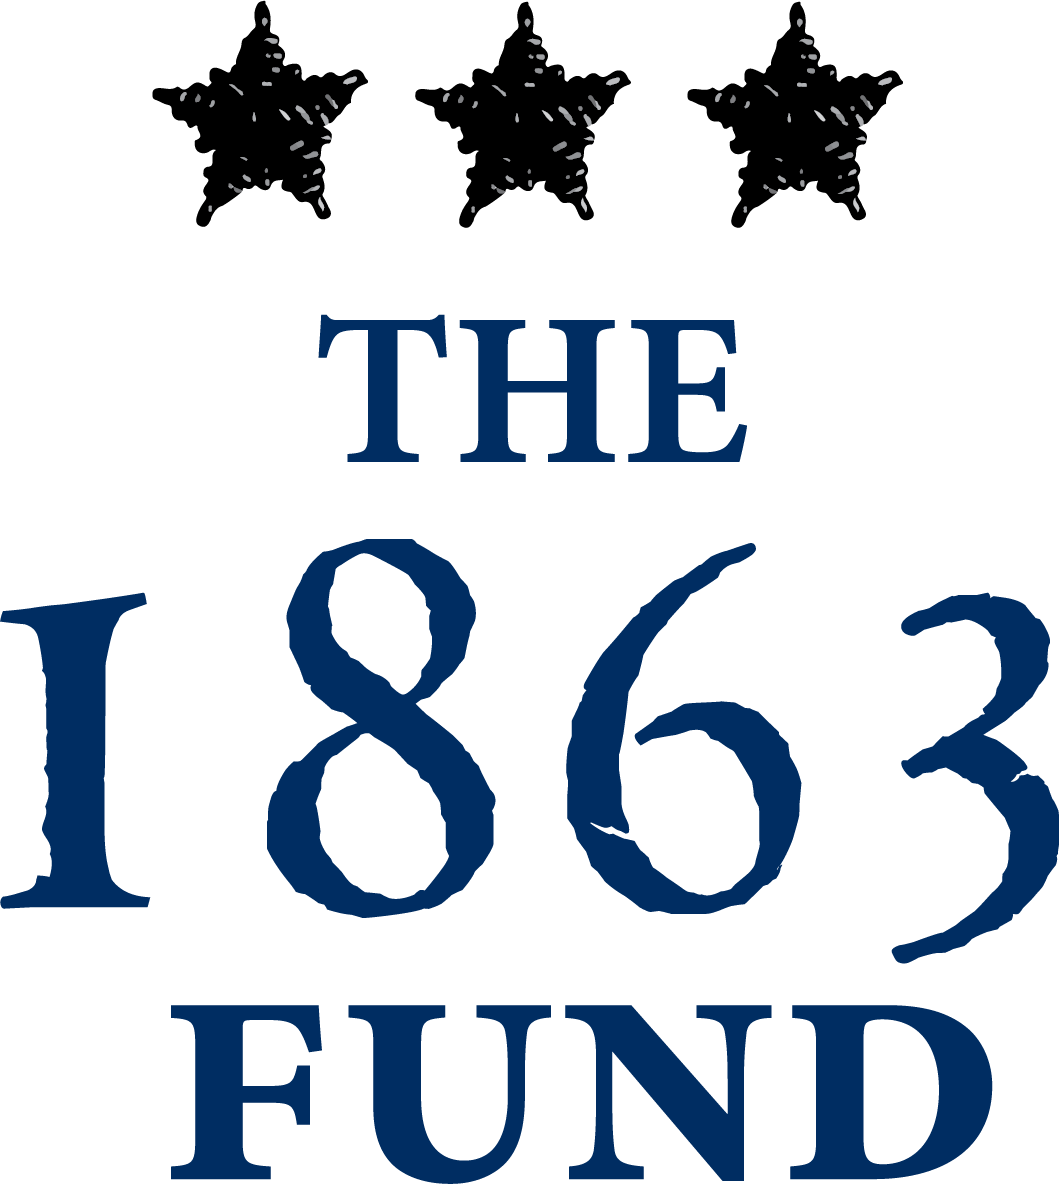 1863 fund